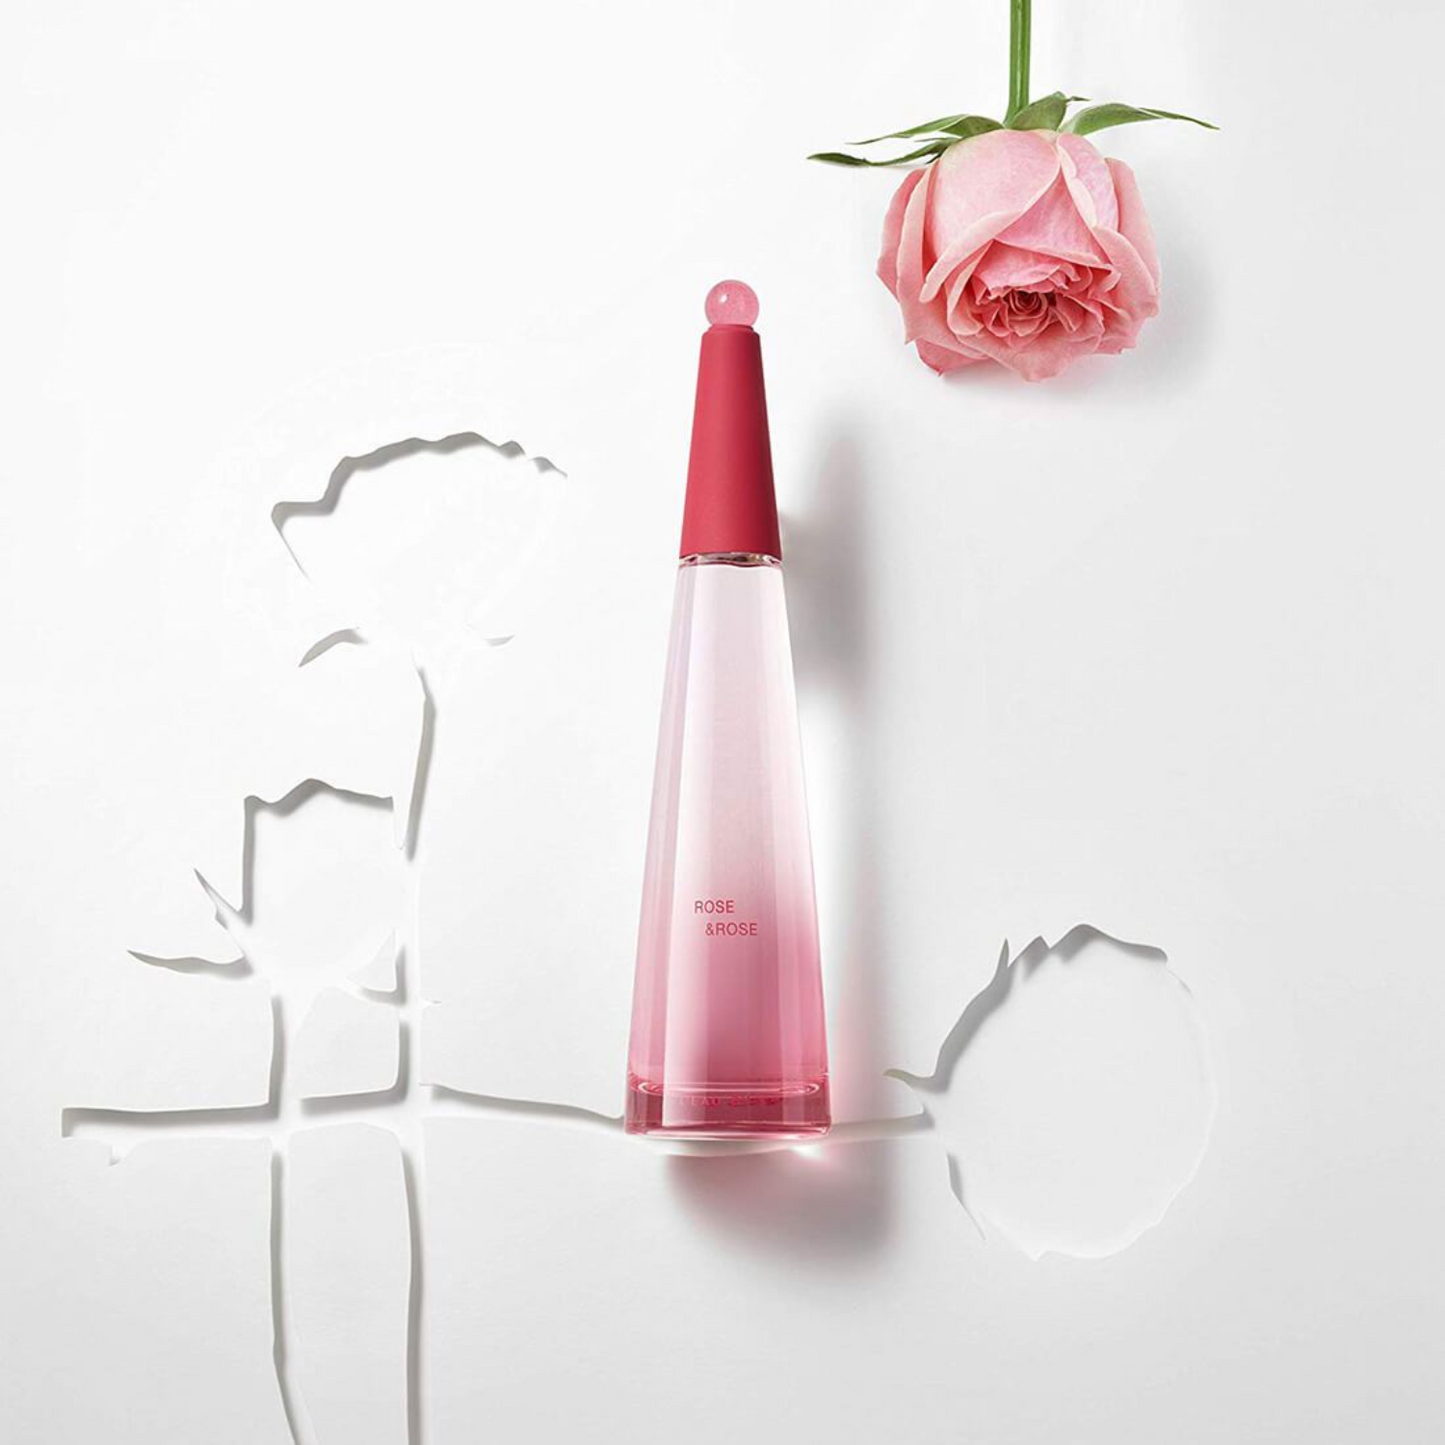 Issey Miyake L’eau d’Issey Rose & Rose Intense Eau De Parfum Intense 90ml